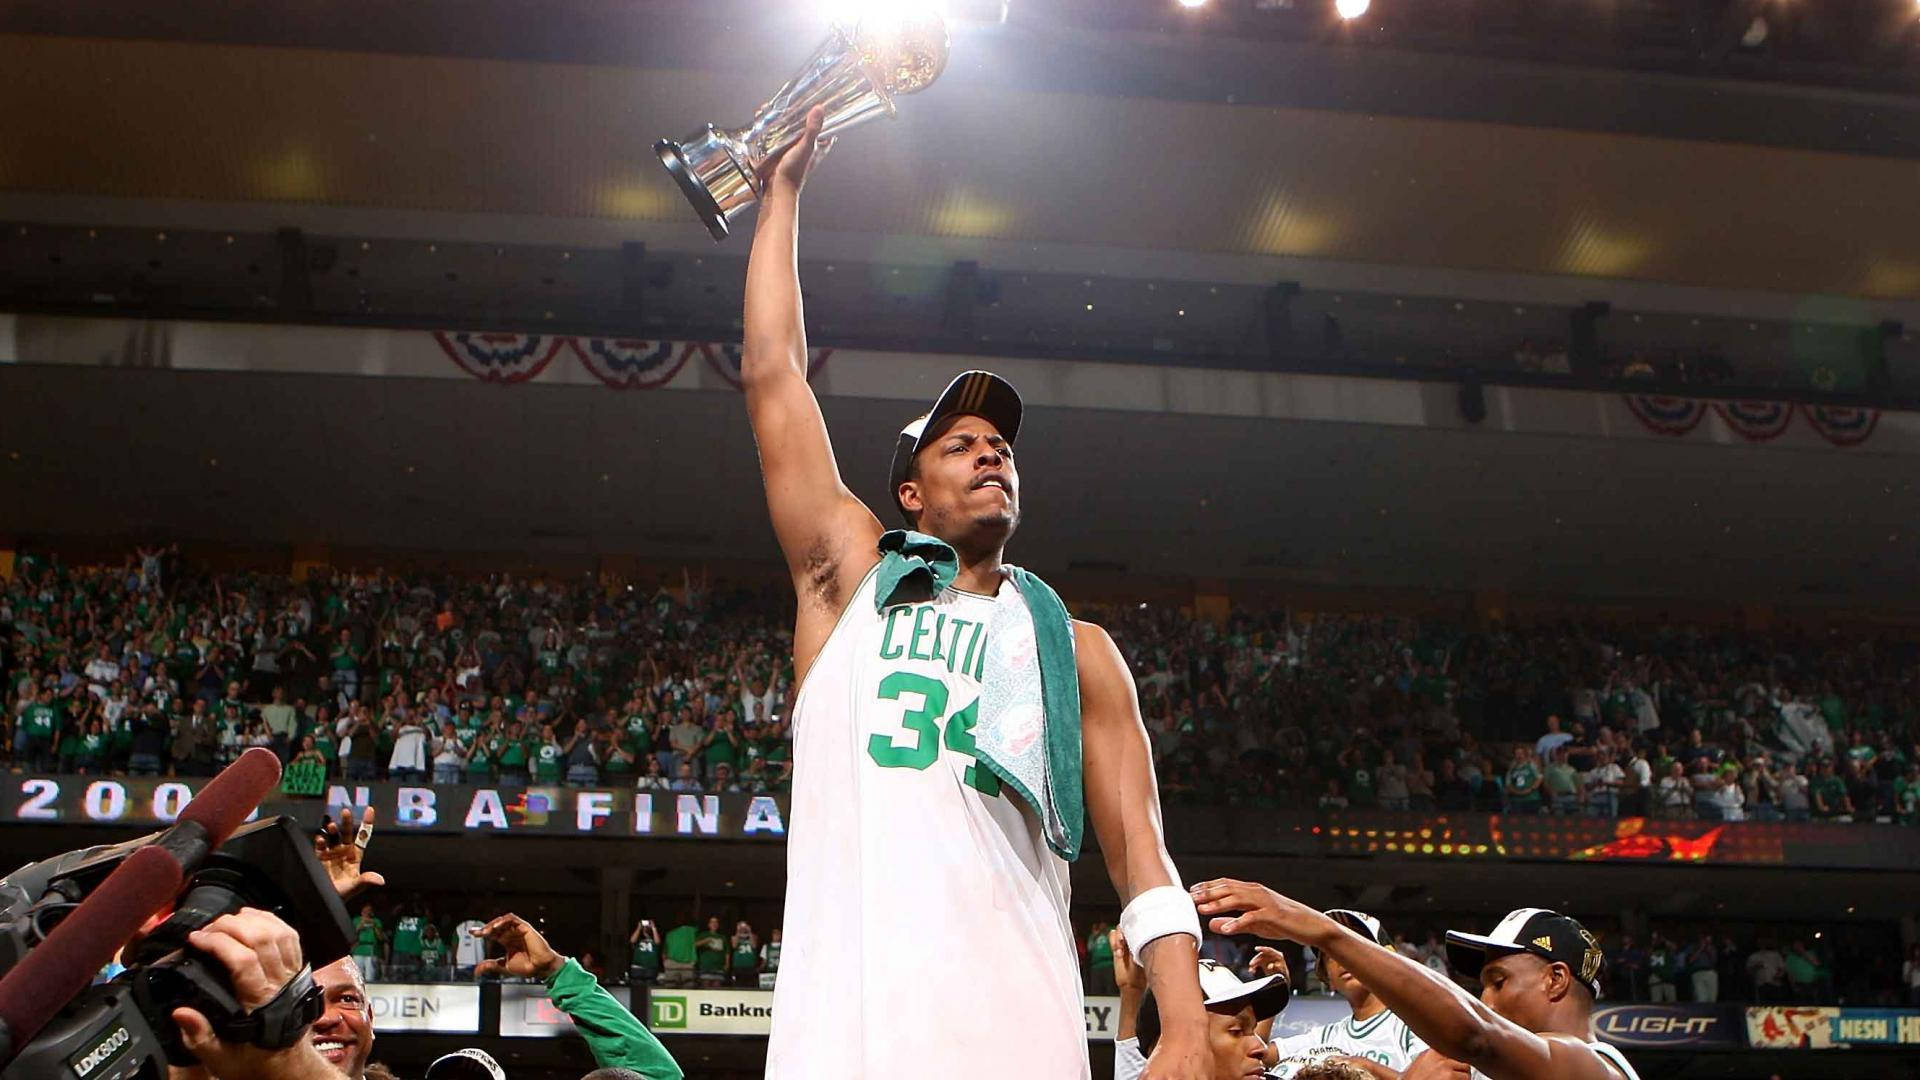 Finalesde La Nba Campeonato De Los Celtics. Fondo de pantalla